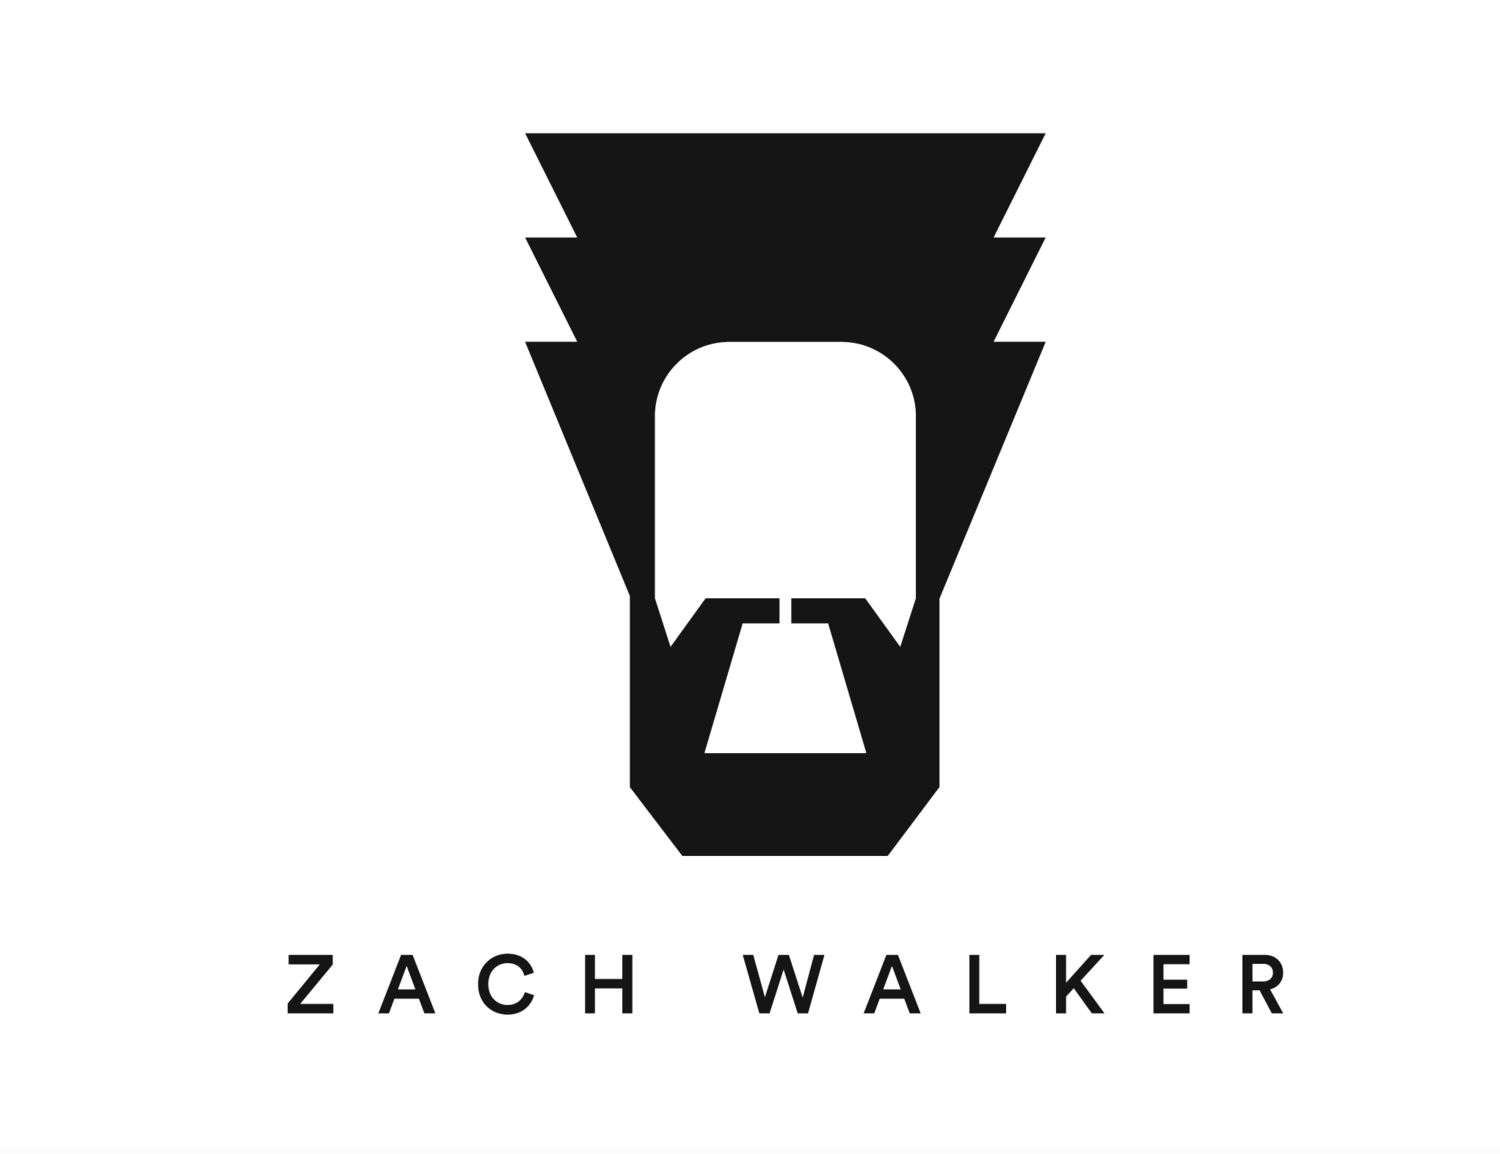 Zachary Walker